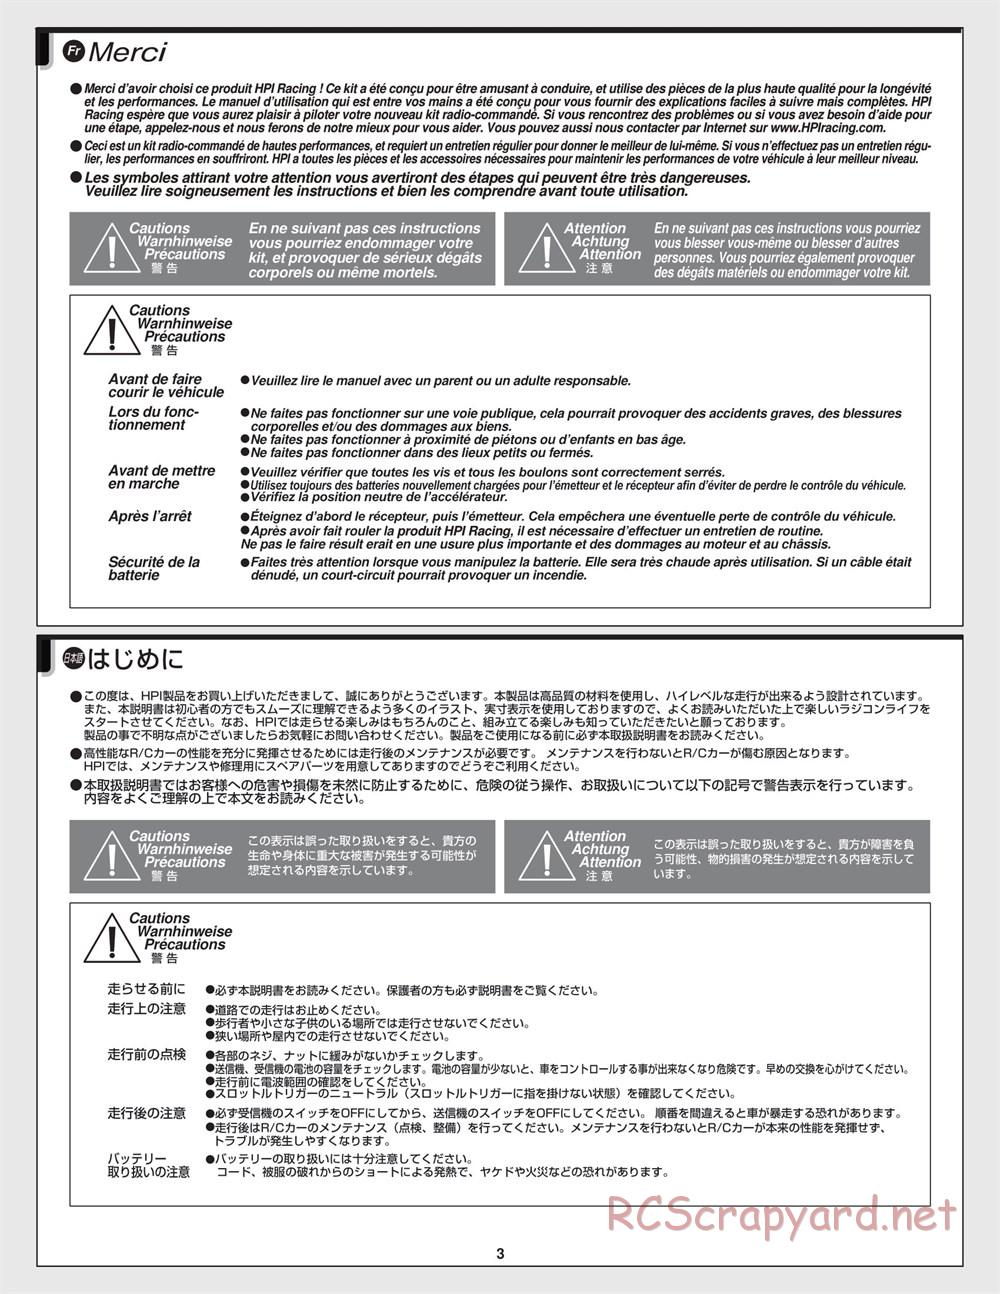 HPI - Jumpshot SC - Manual - Page 3